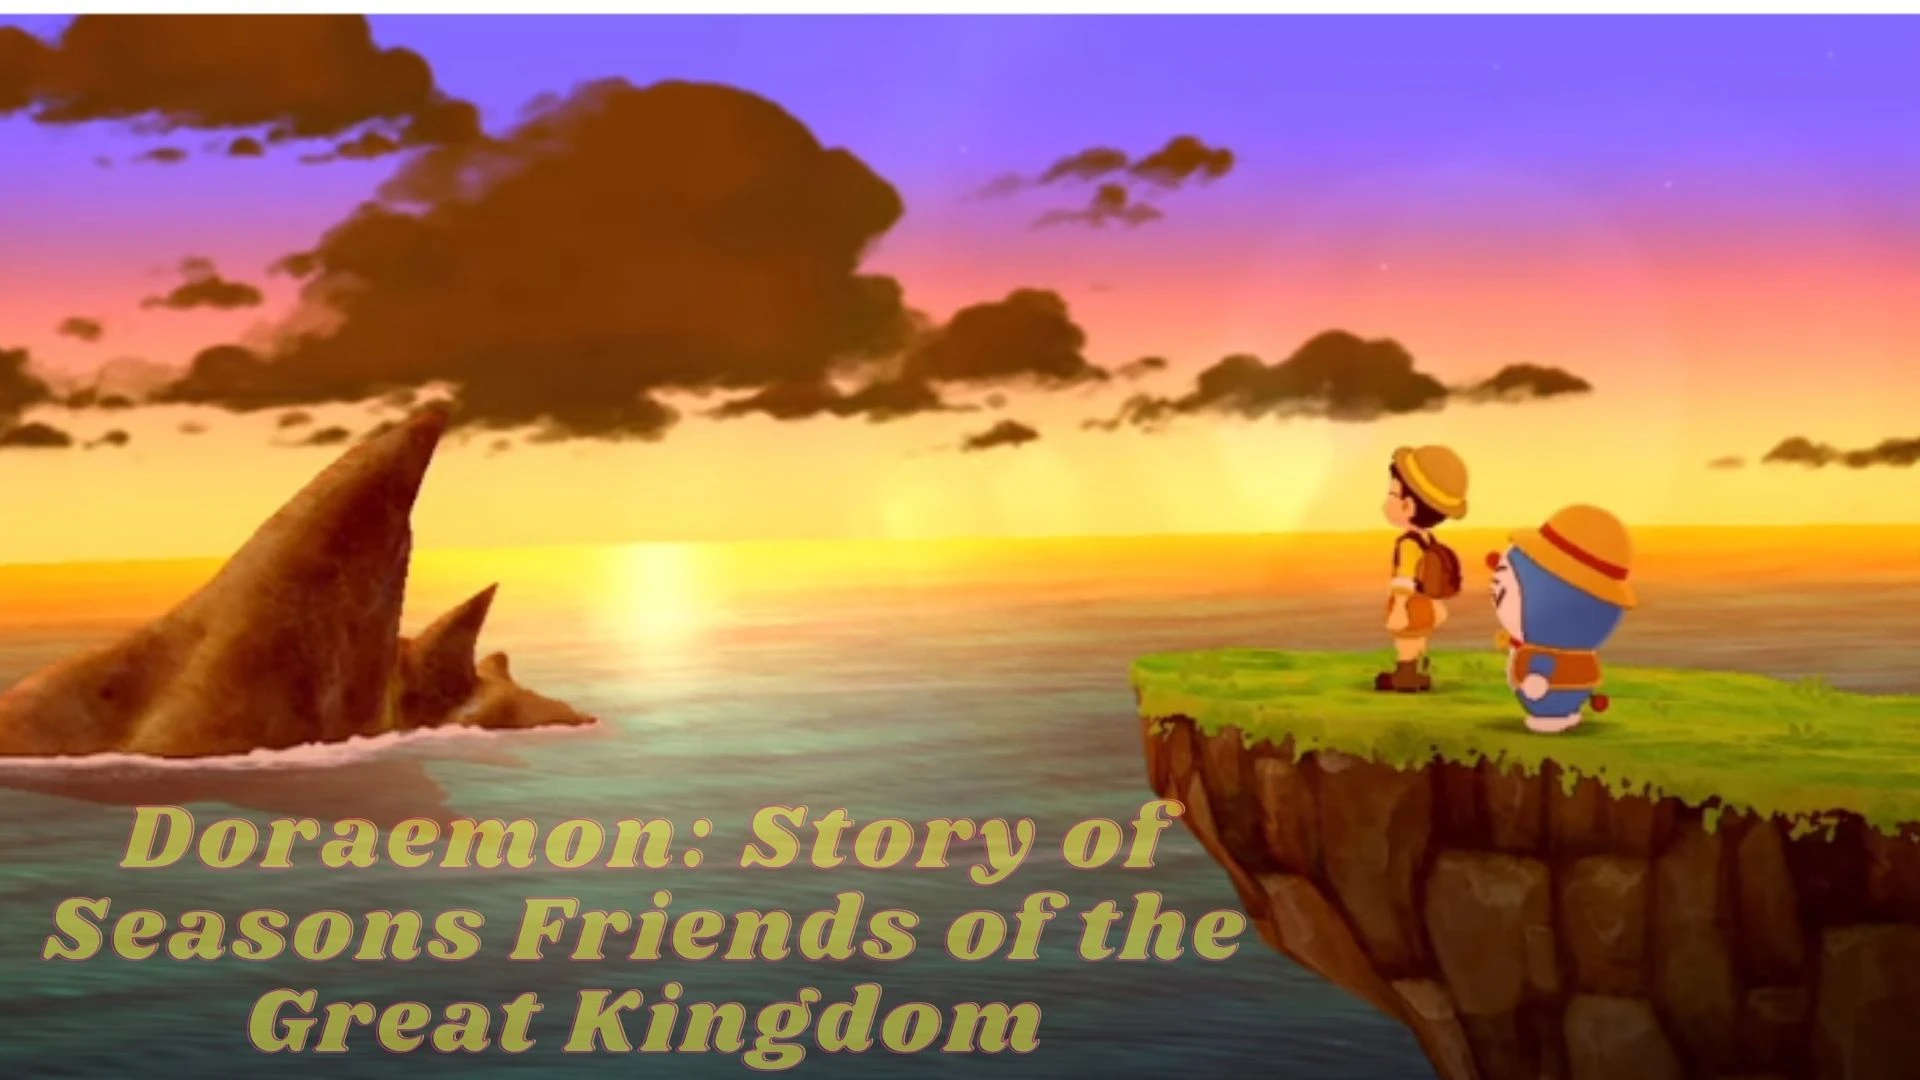 Doraemon: Story Seasons Friends Kingdom Parents Guide 2022